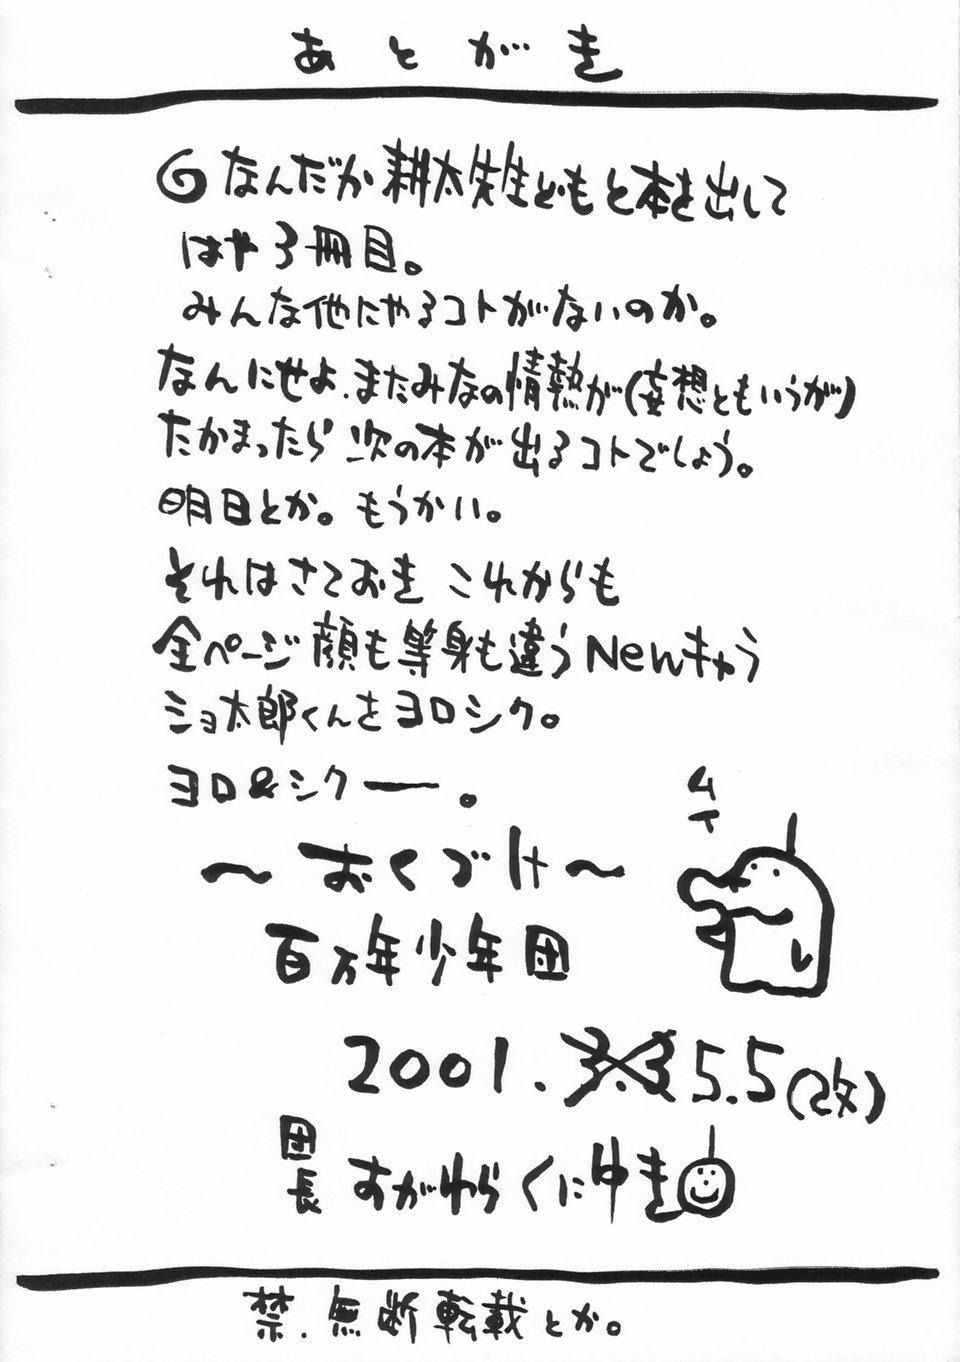 Gang Shotatama III Gostosas - Page 12